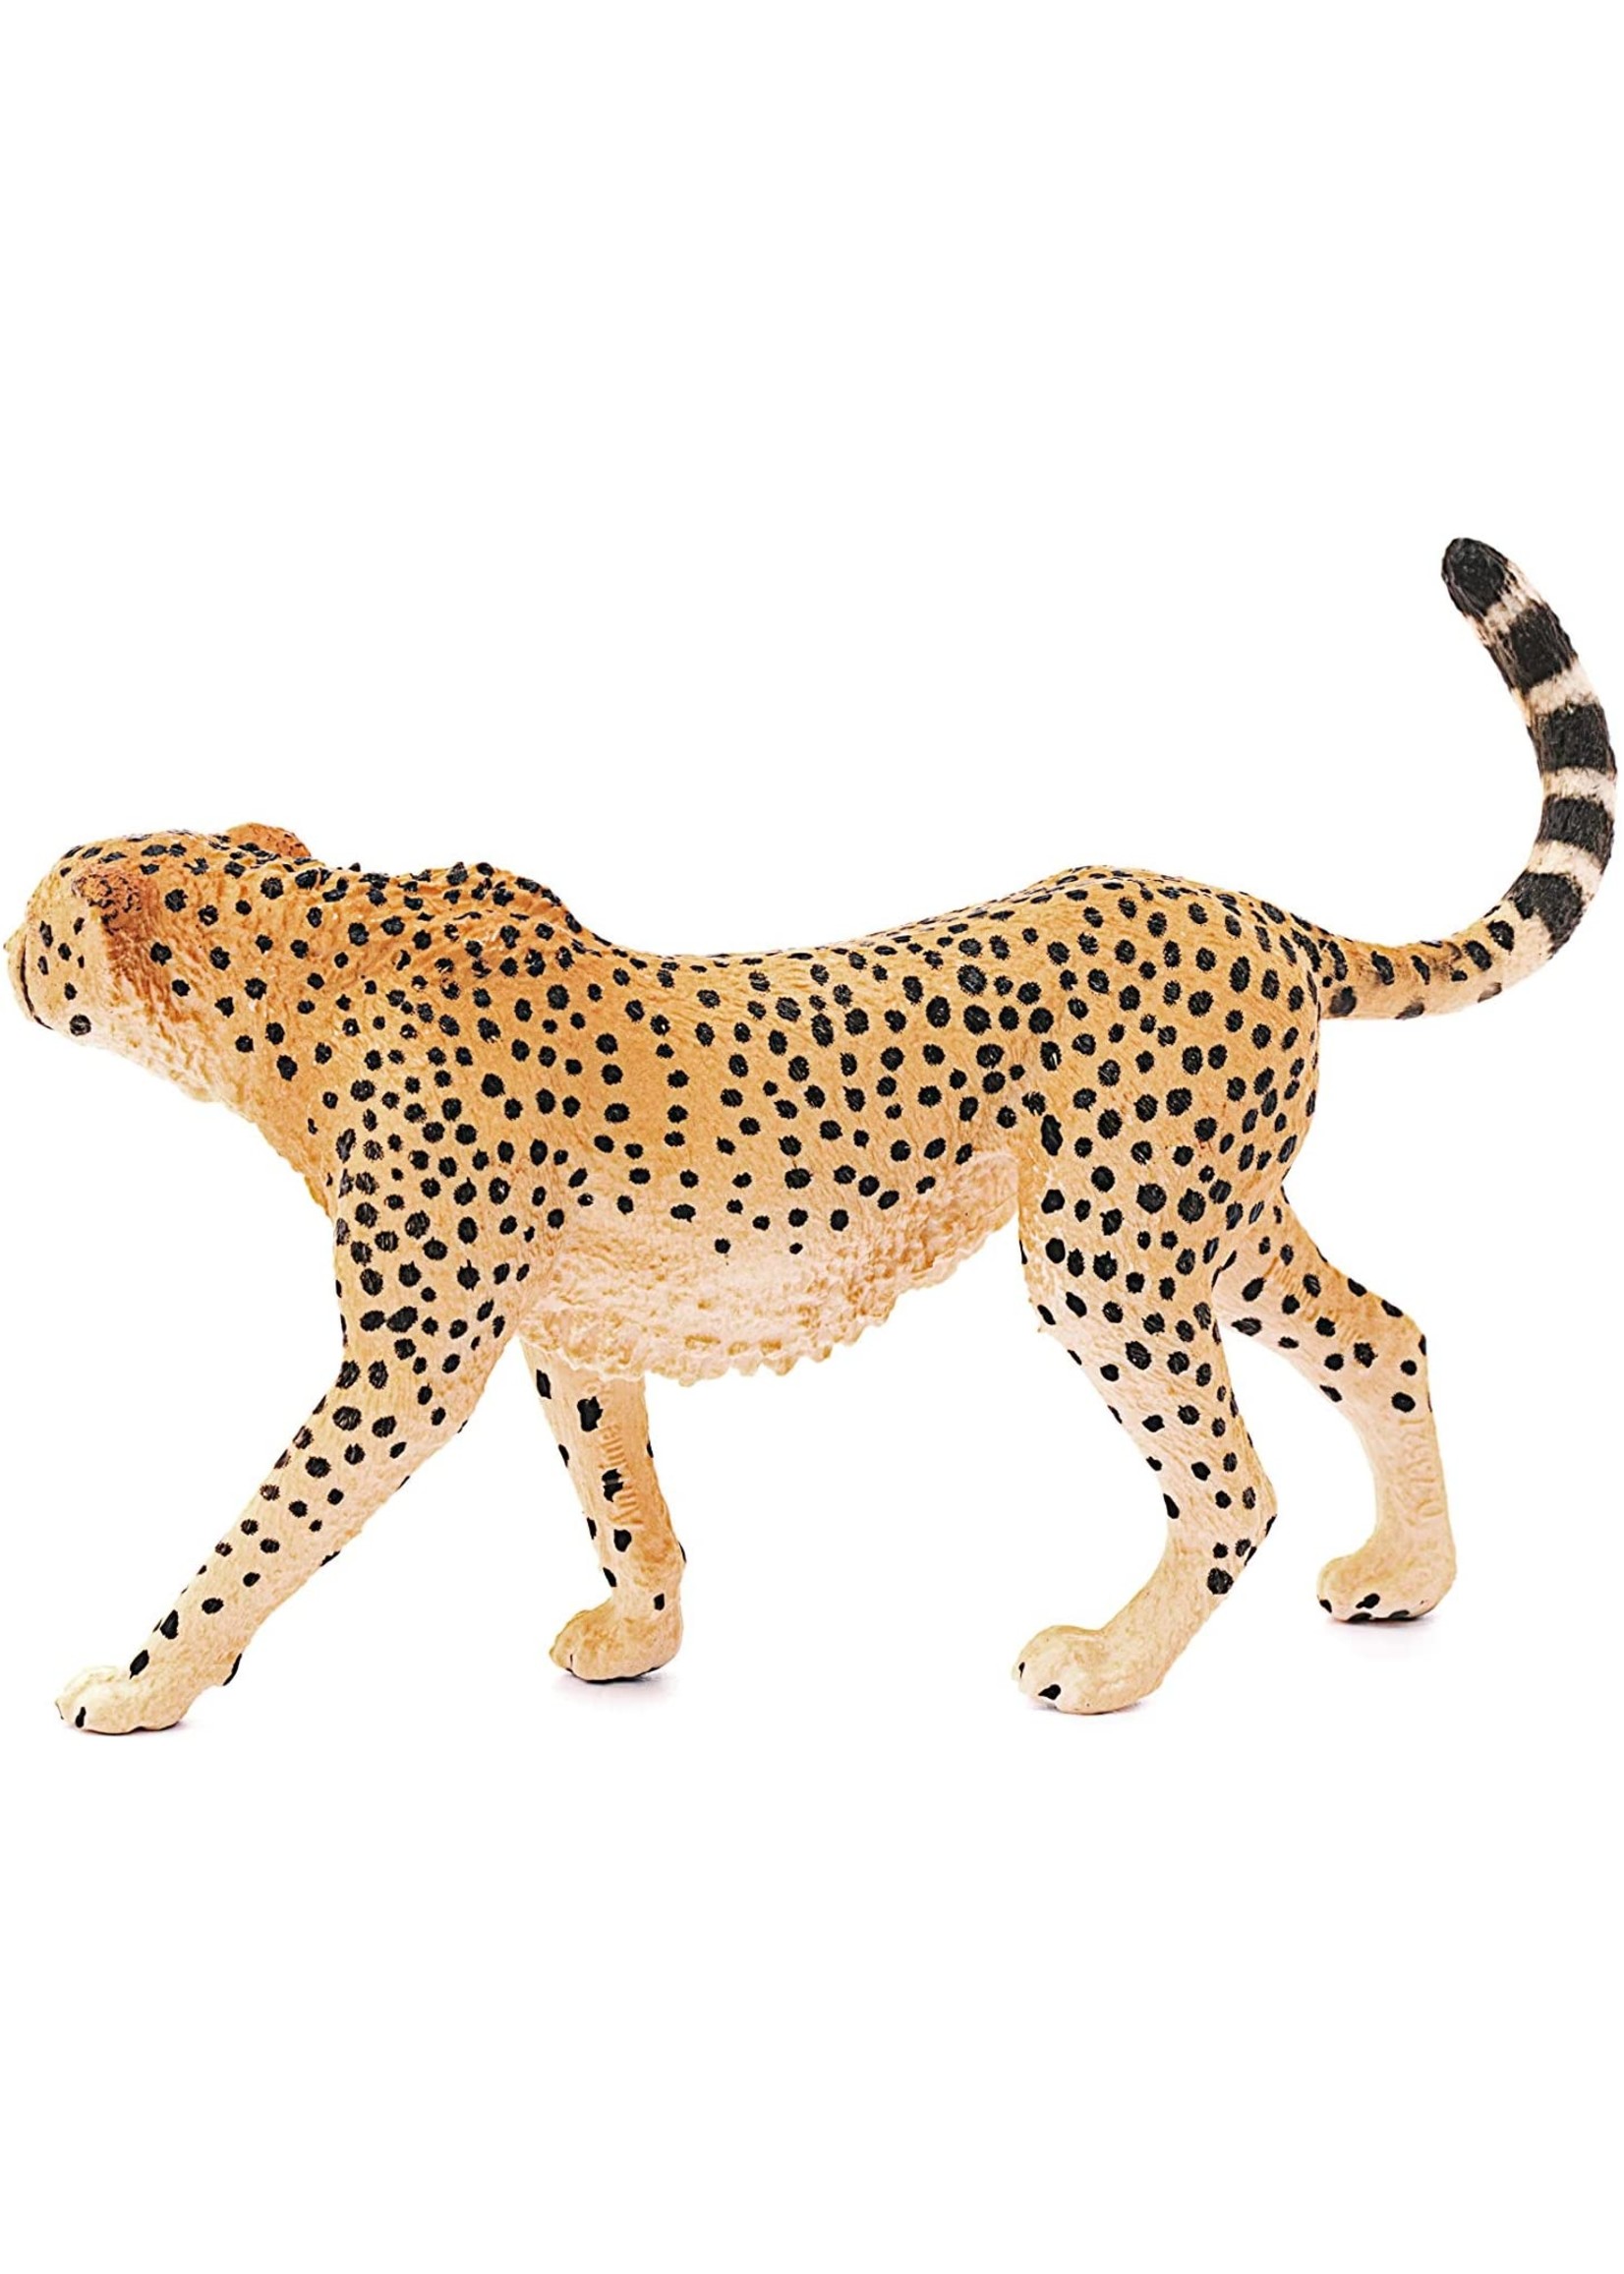 Schleich 14746 - Cheetah, Female